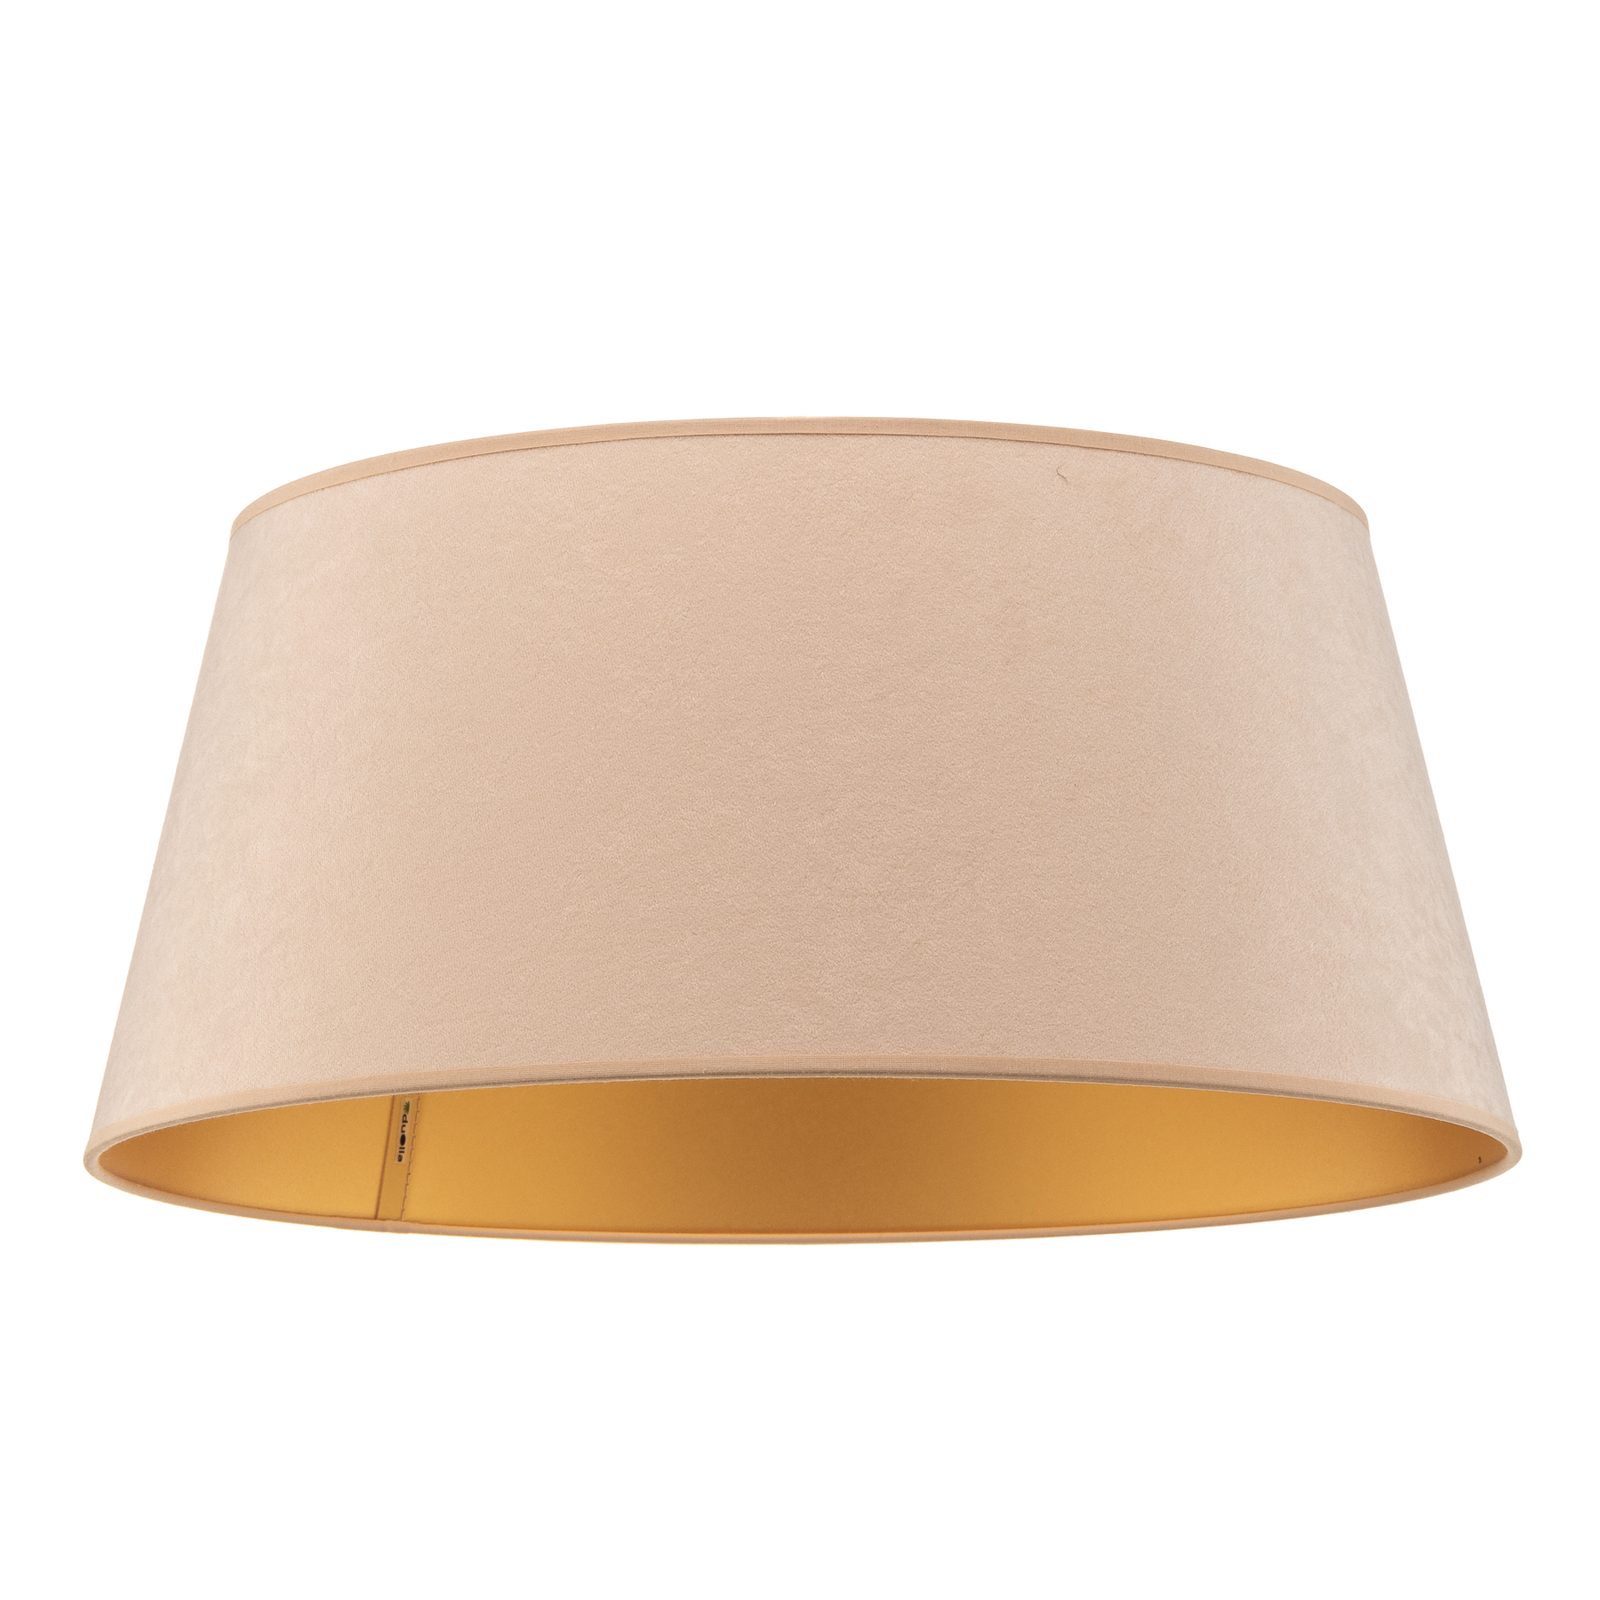 Cone lampshade height 22.5 cm, ecru/gold